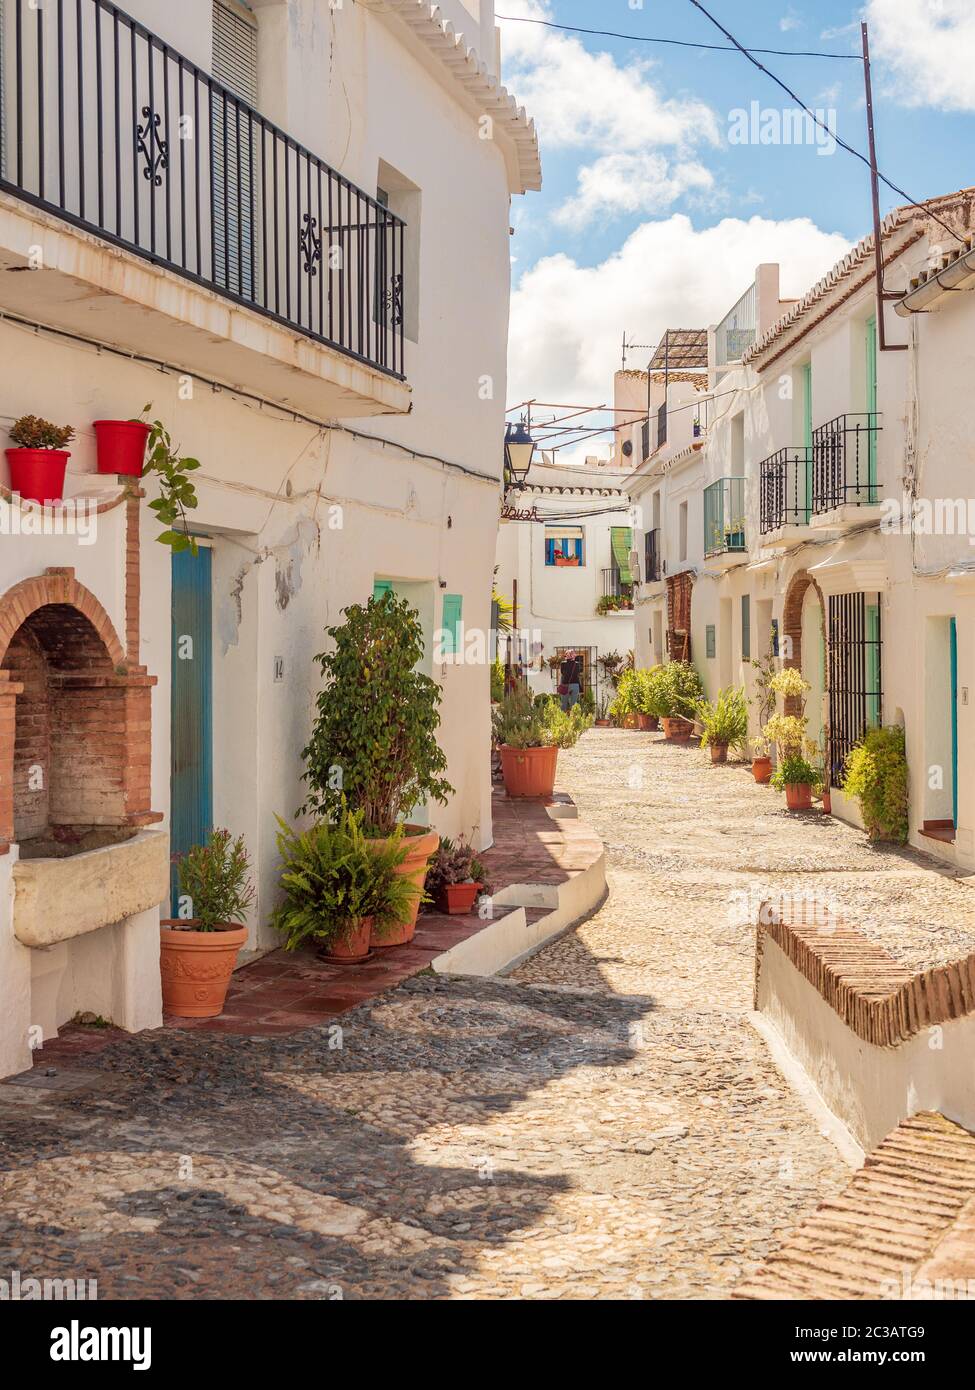 Frigliana costa del Sol Spagna Aprile 18 2019 stradine strette che si snodano tra case con colorate piante in vaso e strada acciottolata Foto Stock